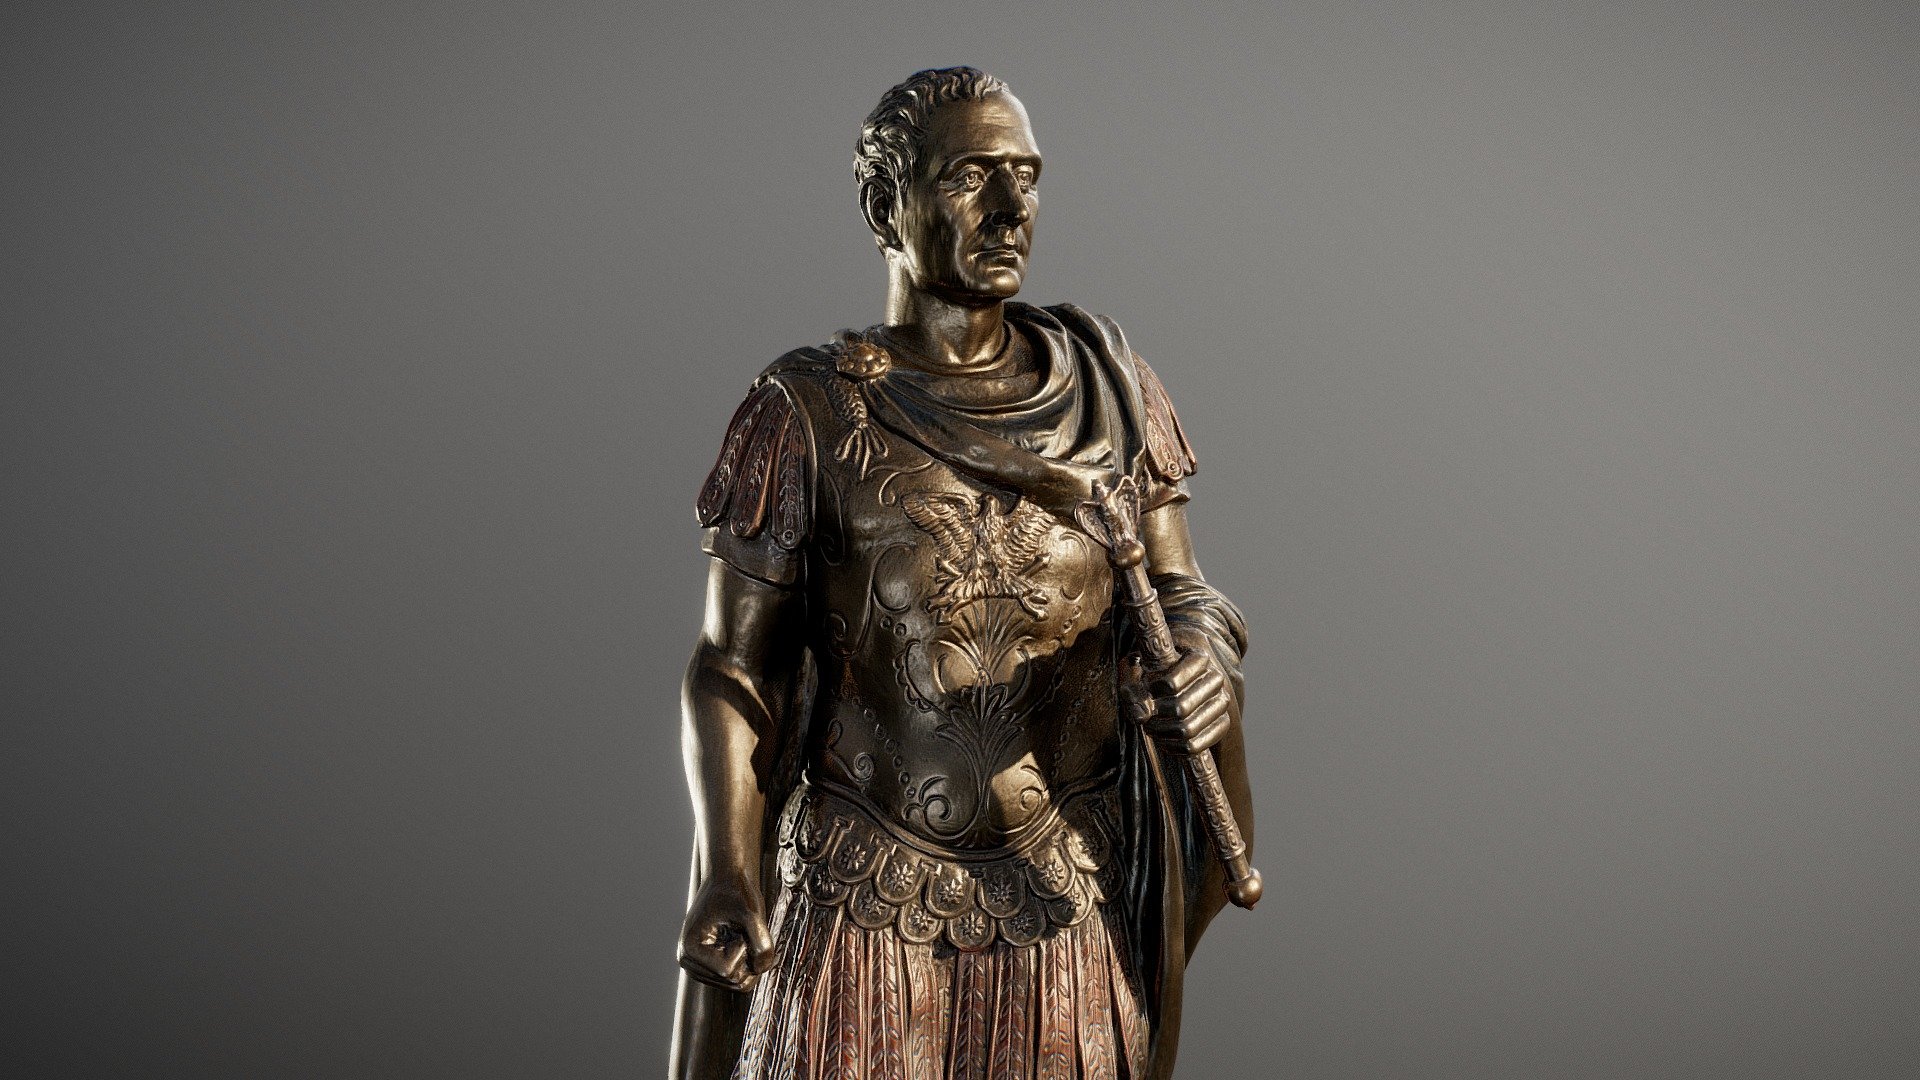 Gaius Julius Caesar Statue

10